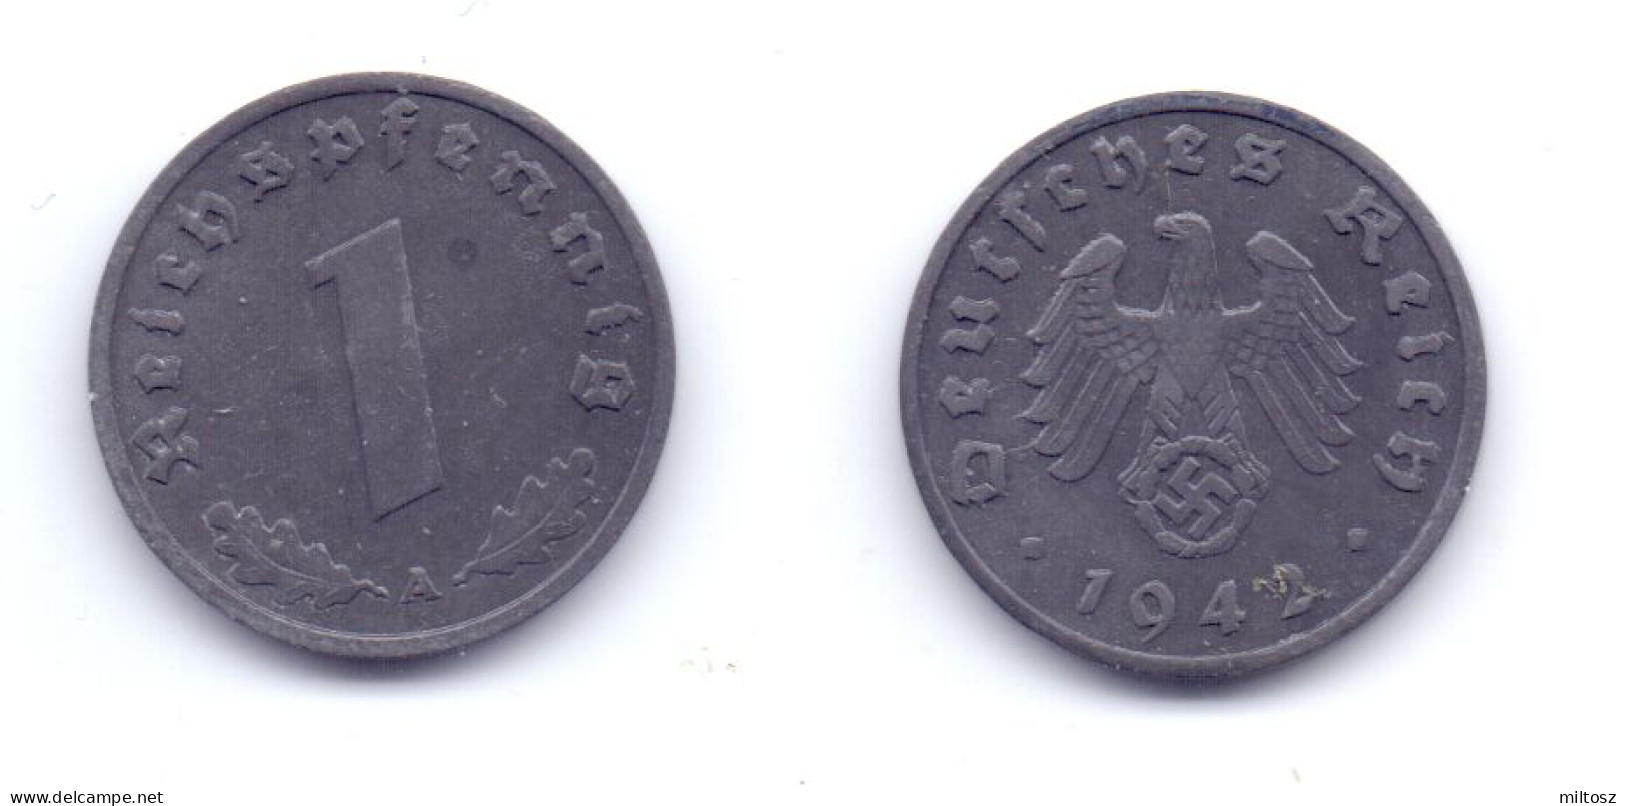 Germany 1 Reichspfennig 1942 A WWII Issue - 1 Reichspfennig